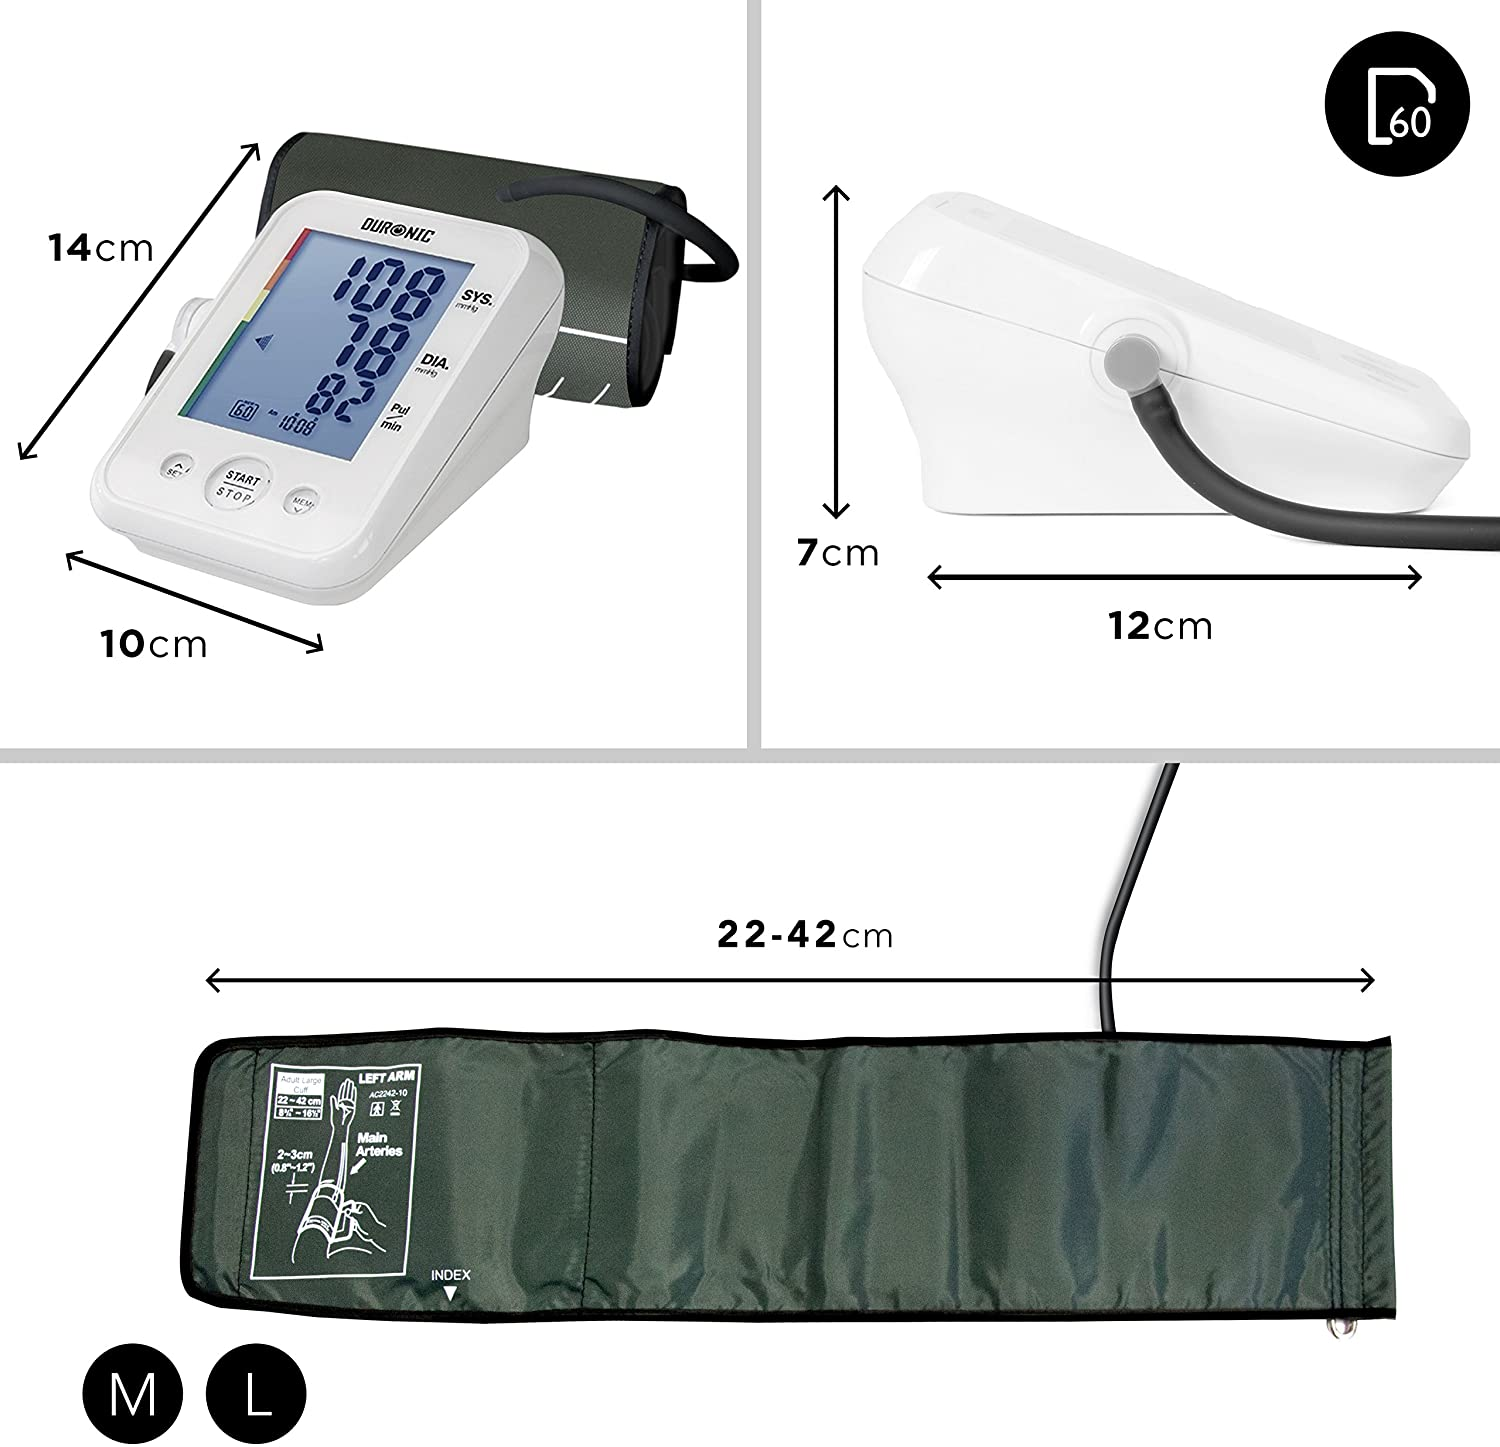 DURONIC BPM150 Bluthochdruckmessgerät